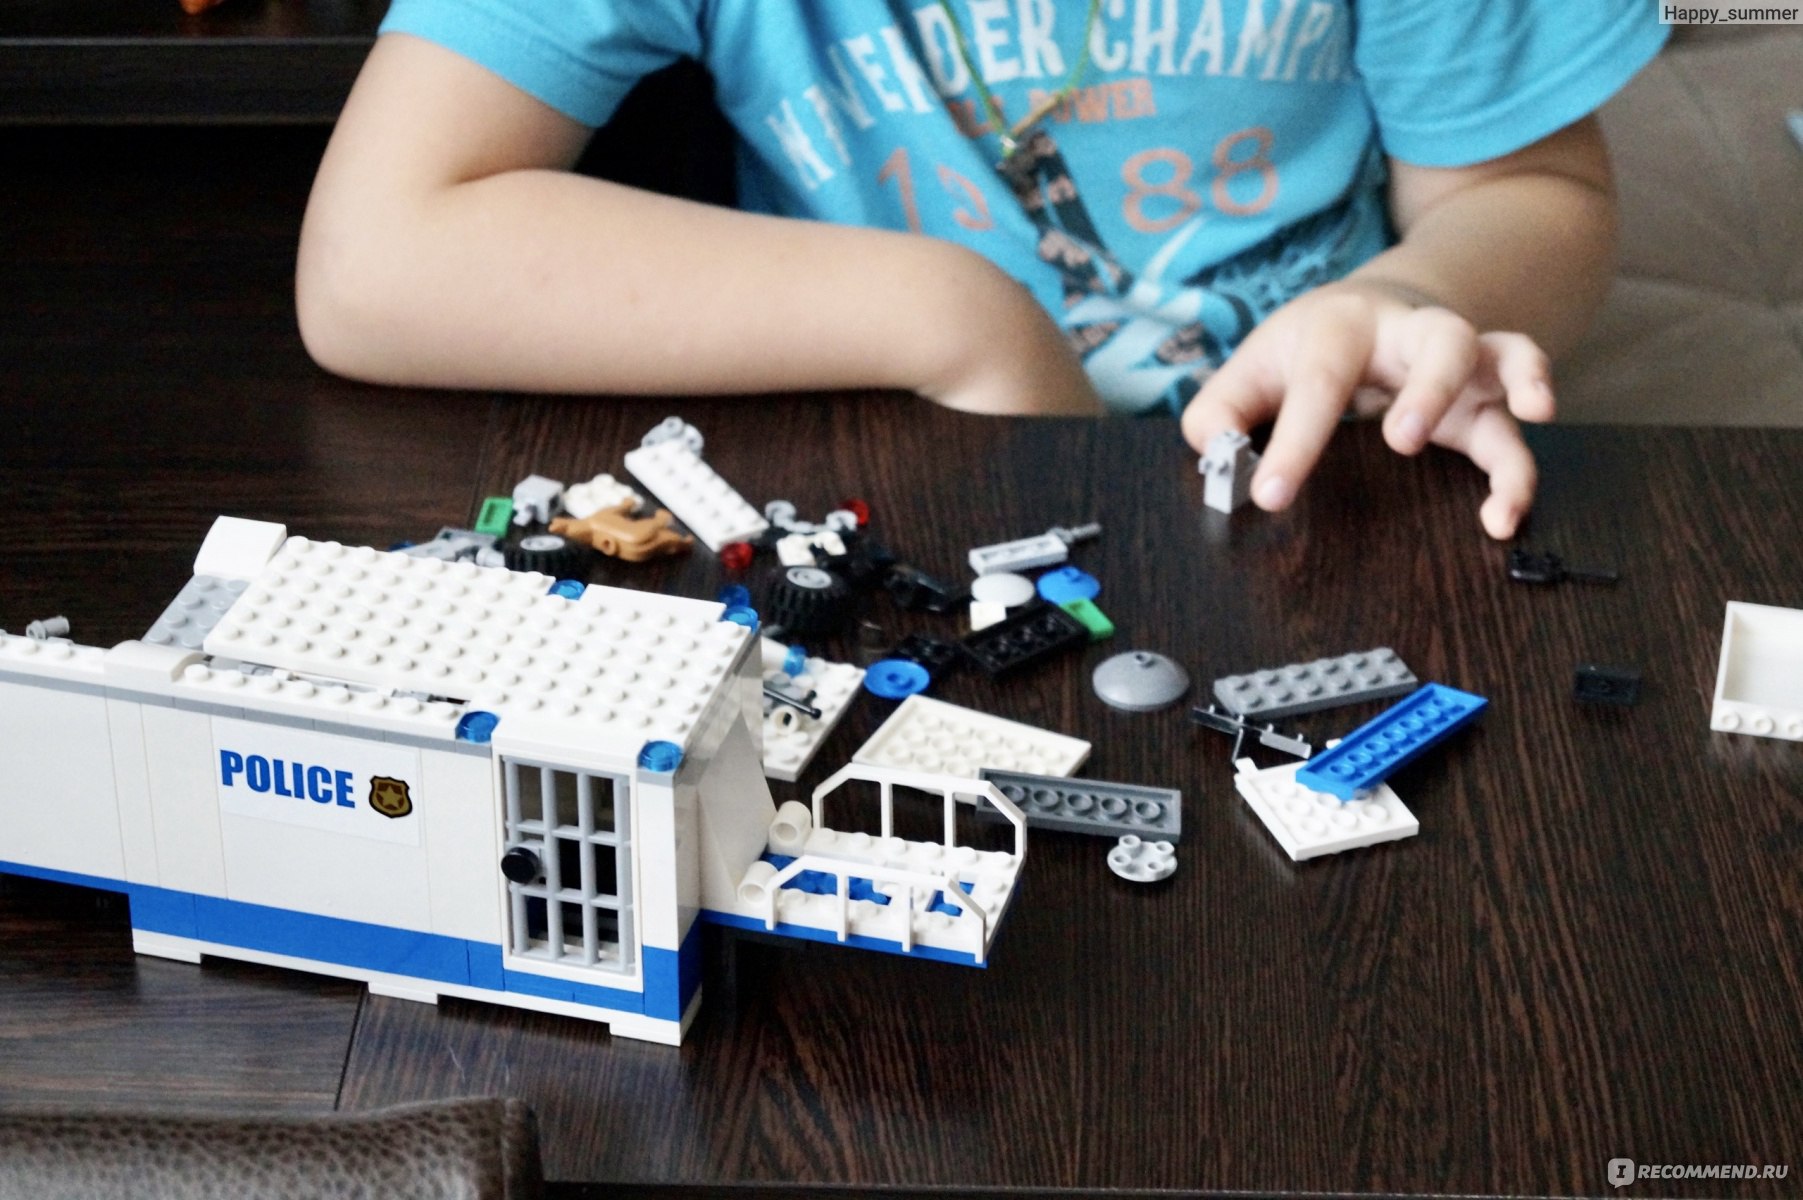 Конструктор для взрослых: мебель из гигантских кирпичиков типа LEGO (16 фото)